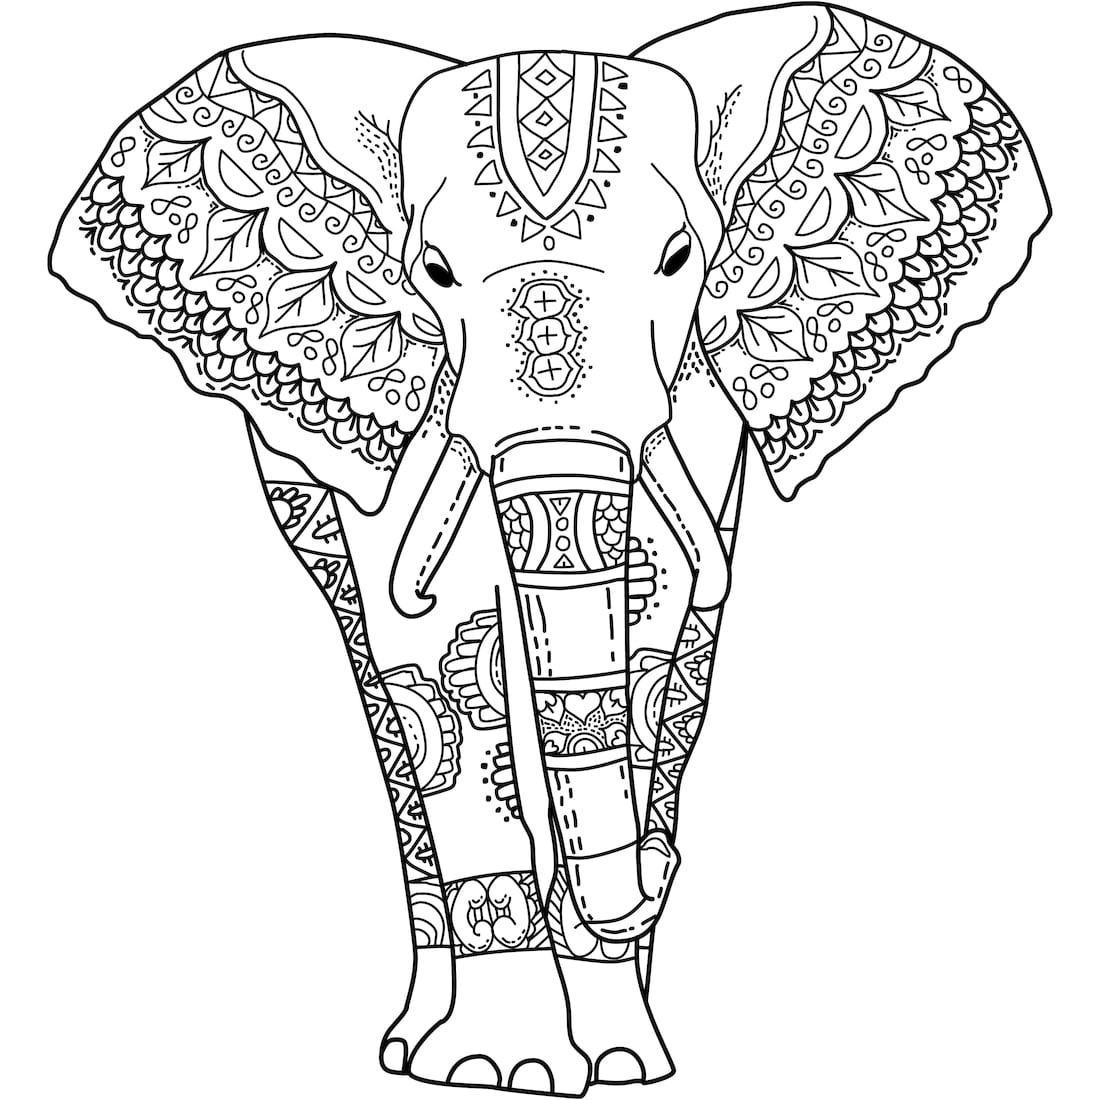 Tranh tô màu con voi có hoa văn rất đẹp